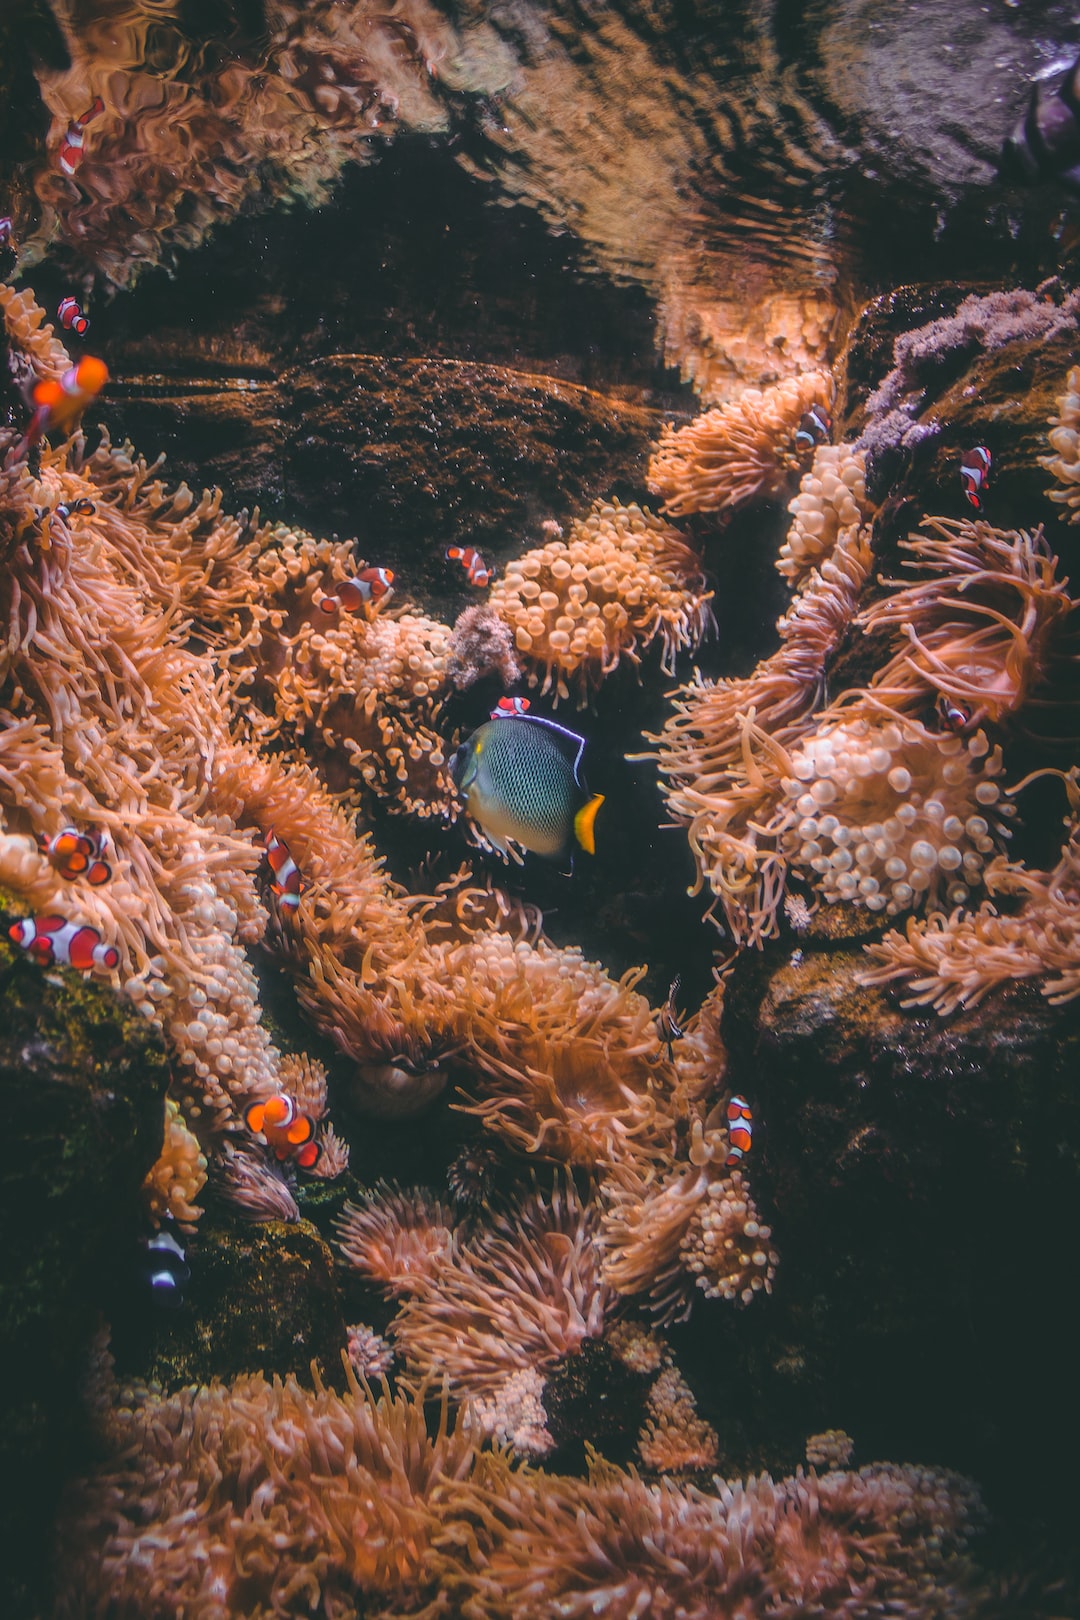 25 wichtige Fragen zu Welche Aquarium Fische Fressen Würmer?